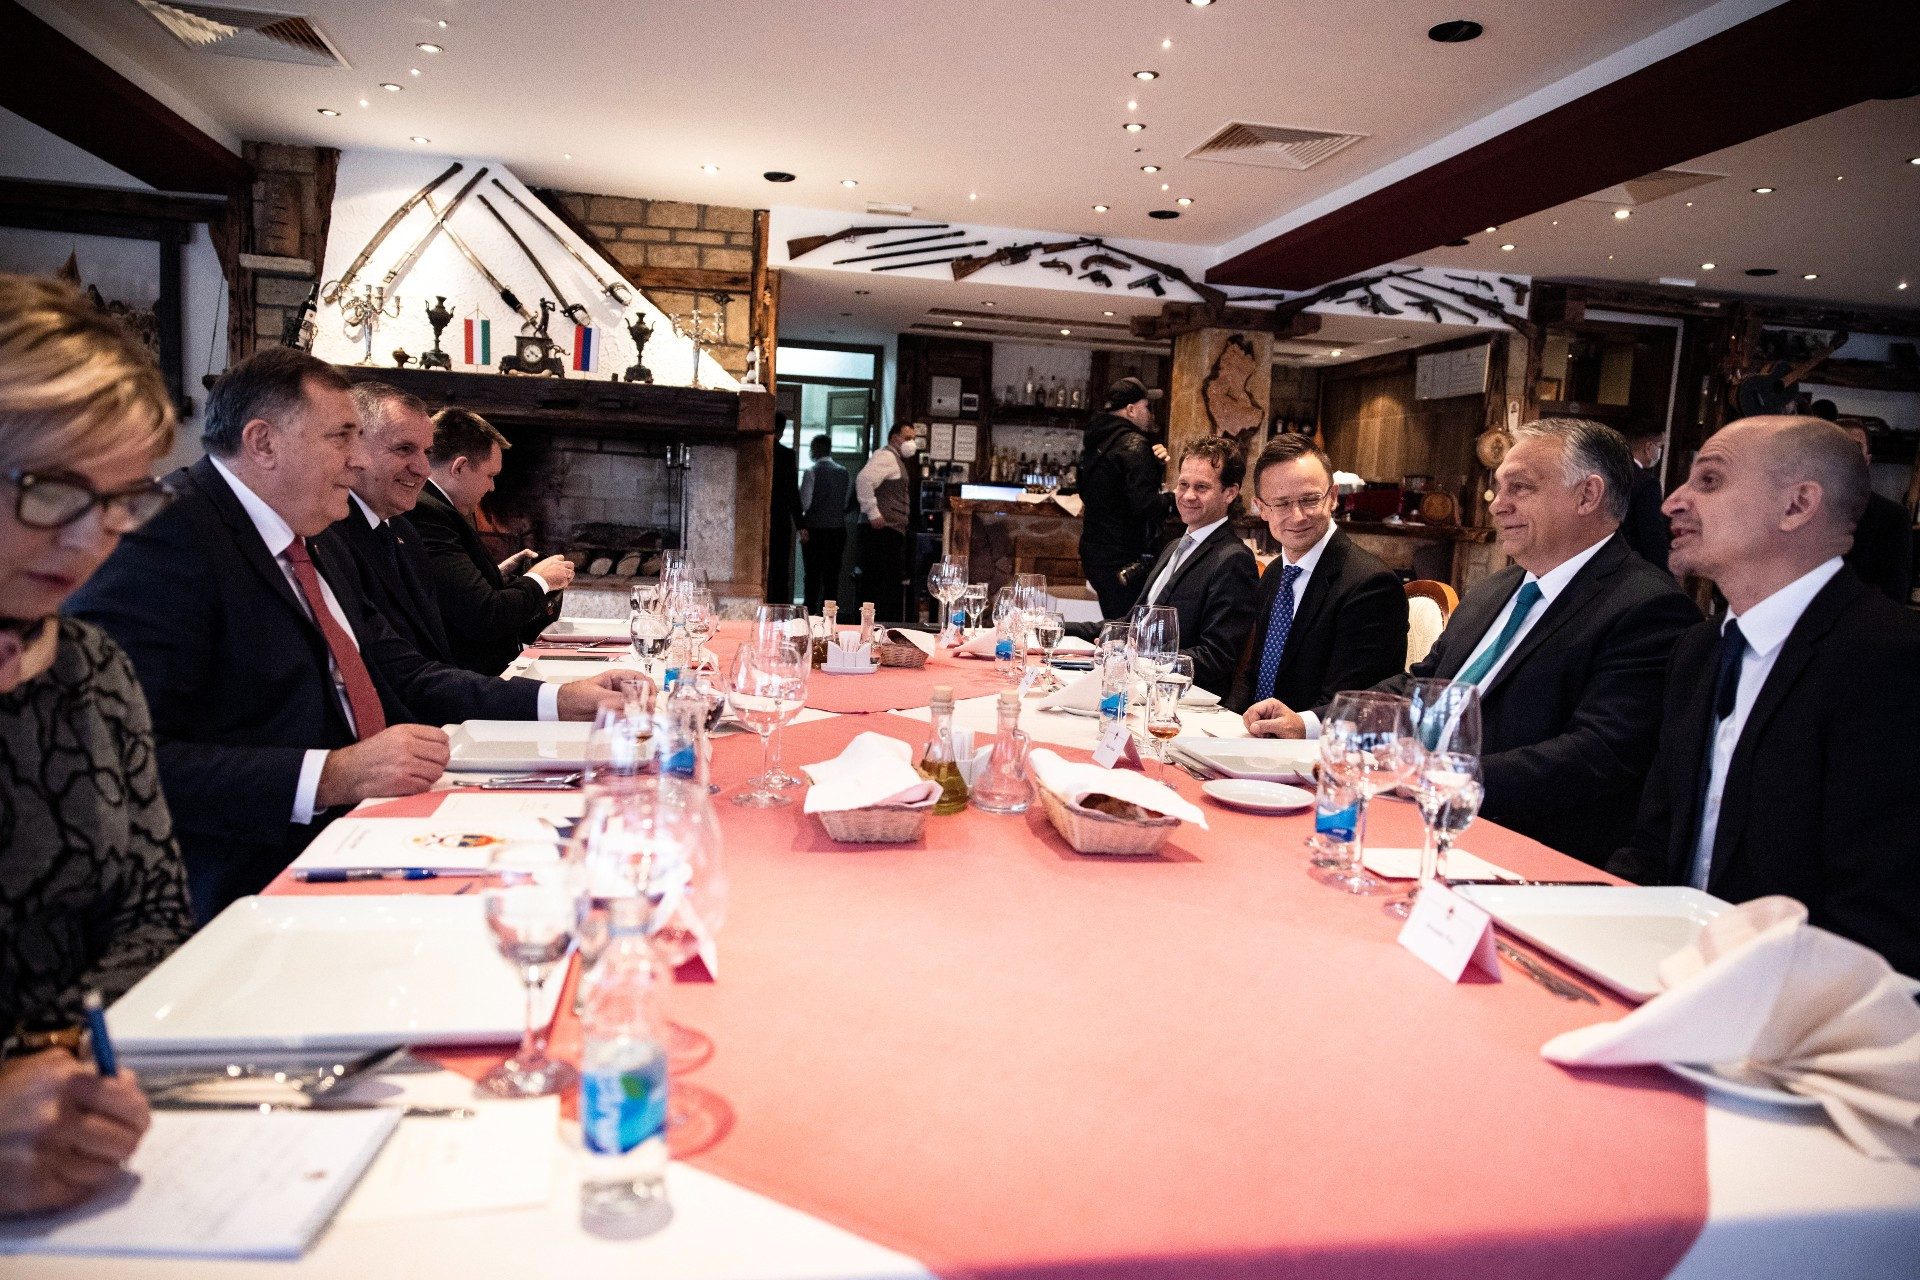 Banja Luka, 2021. november 6.
A Miniszterelnöki Sajtóiroda által közreadott képen Orbán Viktor miniszterelnök (j2) és Milorad Dodik, a Bosznia-Hercegovina háromtagú elnökségének szerb tagja (b2) tárgyalást folytat munkaebéden Banja Lukában 2021. november 6-án. A megbeszéléseken részt vett Szijjártó Péter külgazdasági és külügyminiszter (j3) is